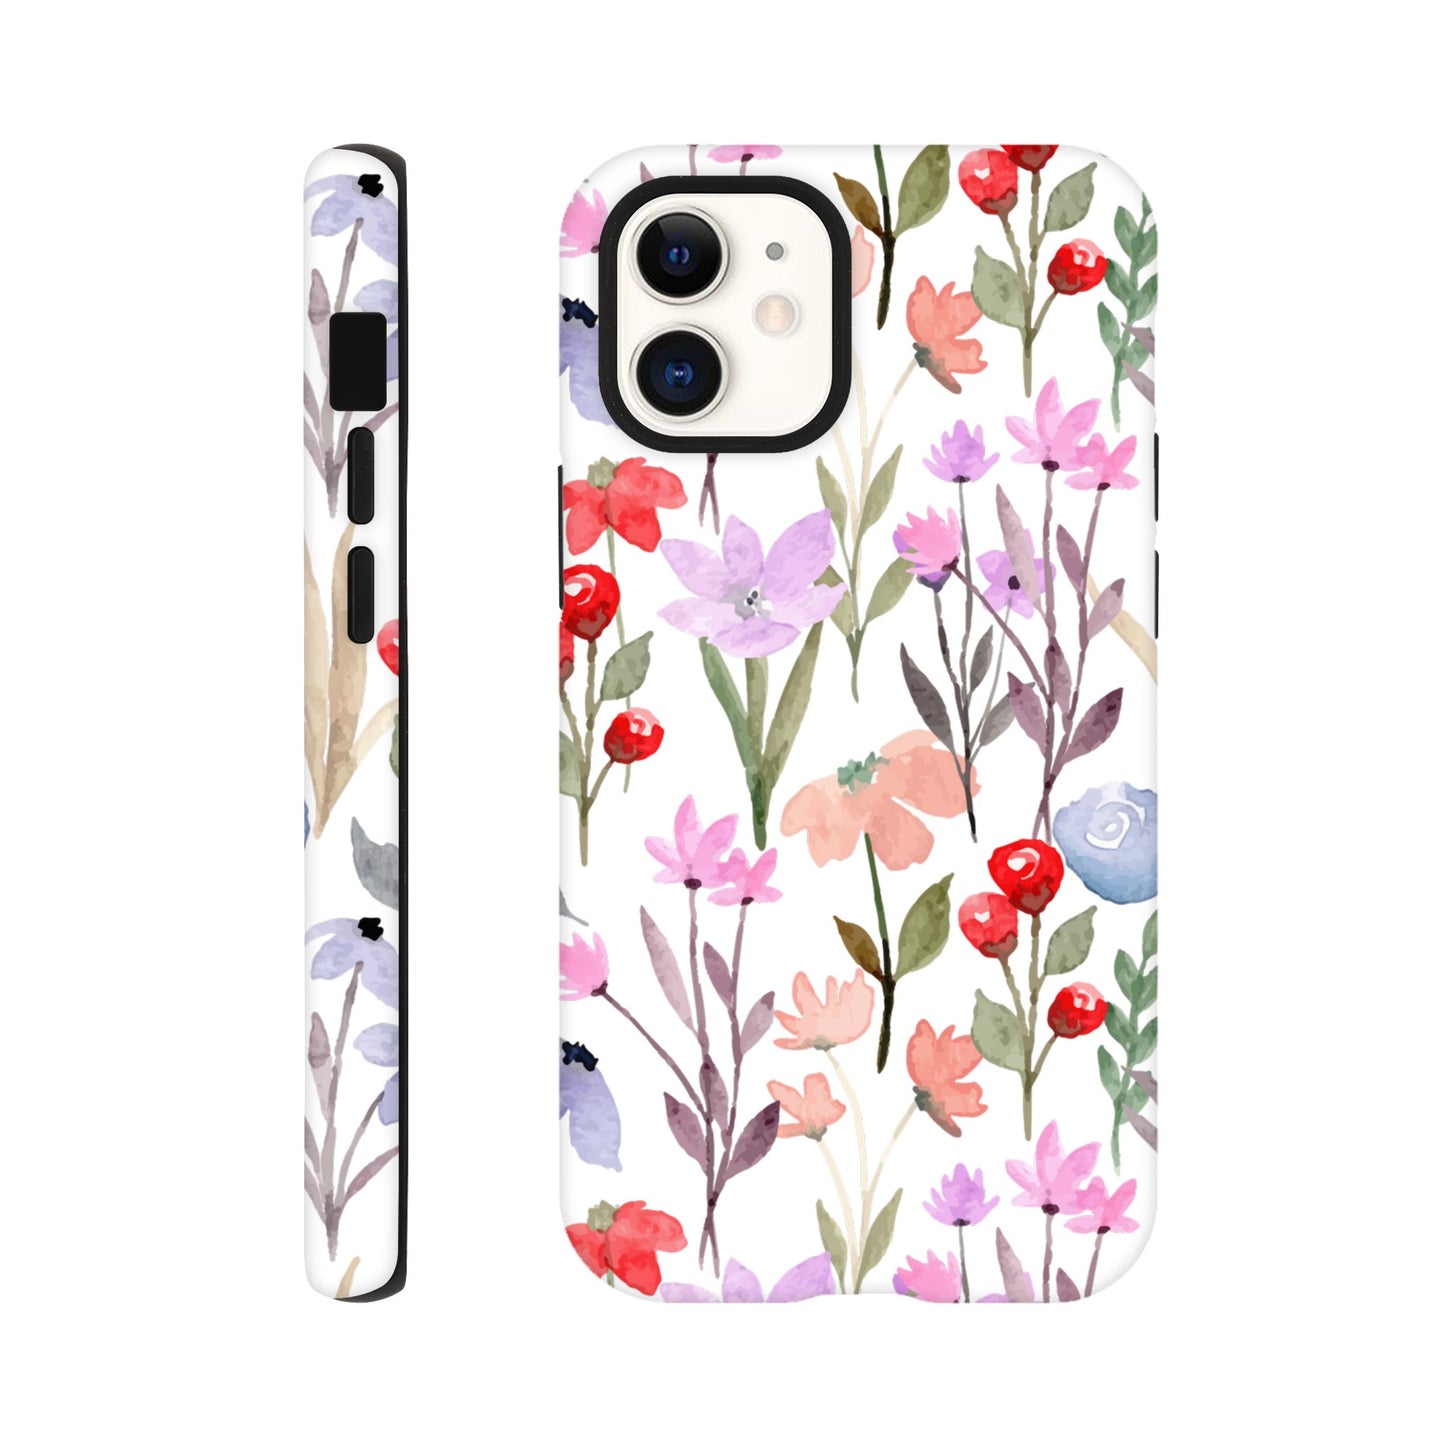 Watercolour Flowers - Phone Tough Case iPhone 12 Mini Phone Case Plants